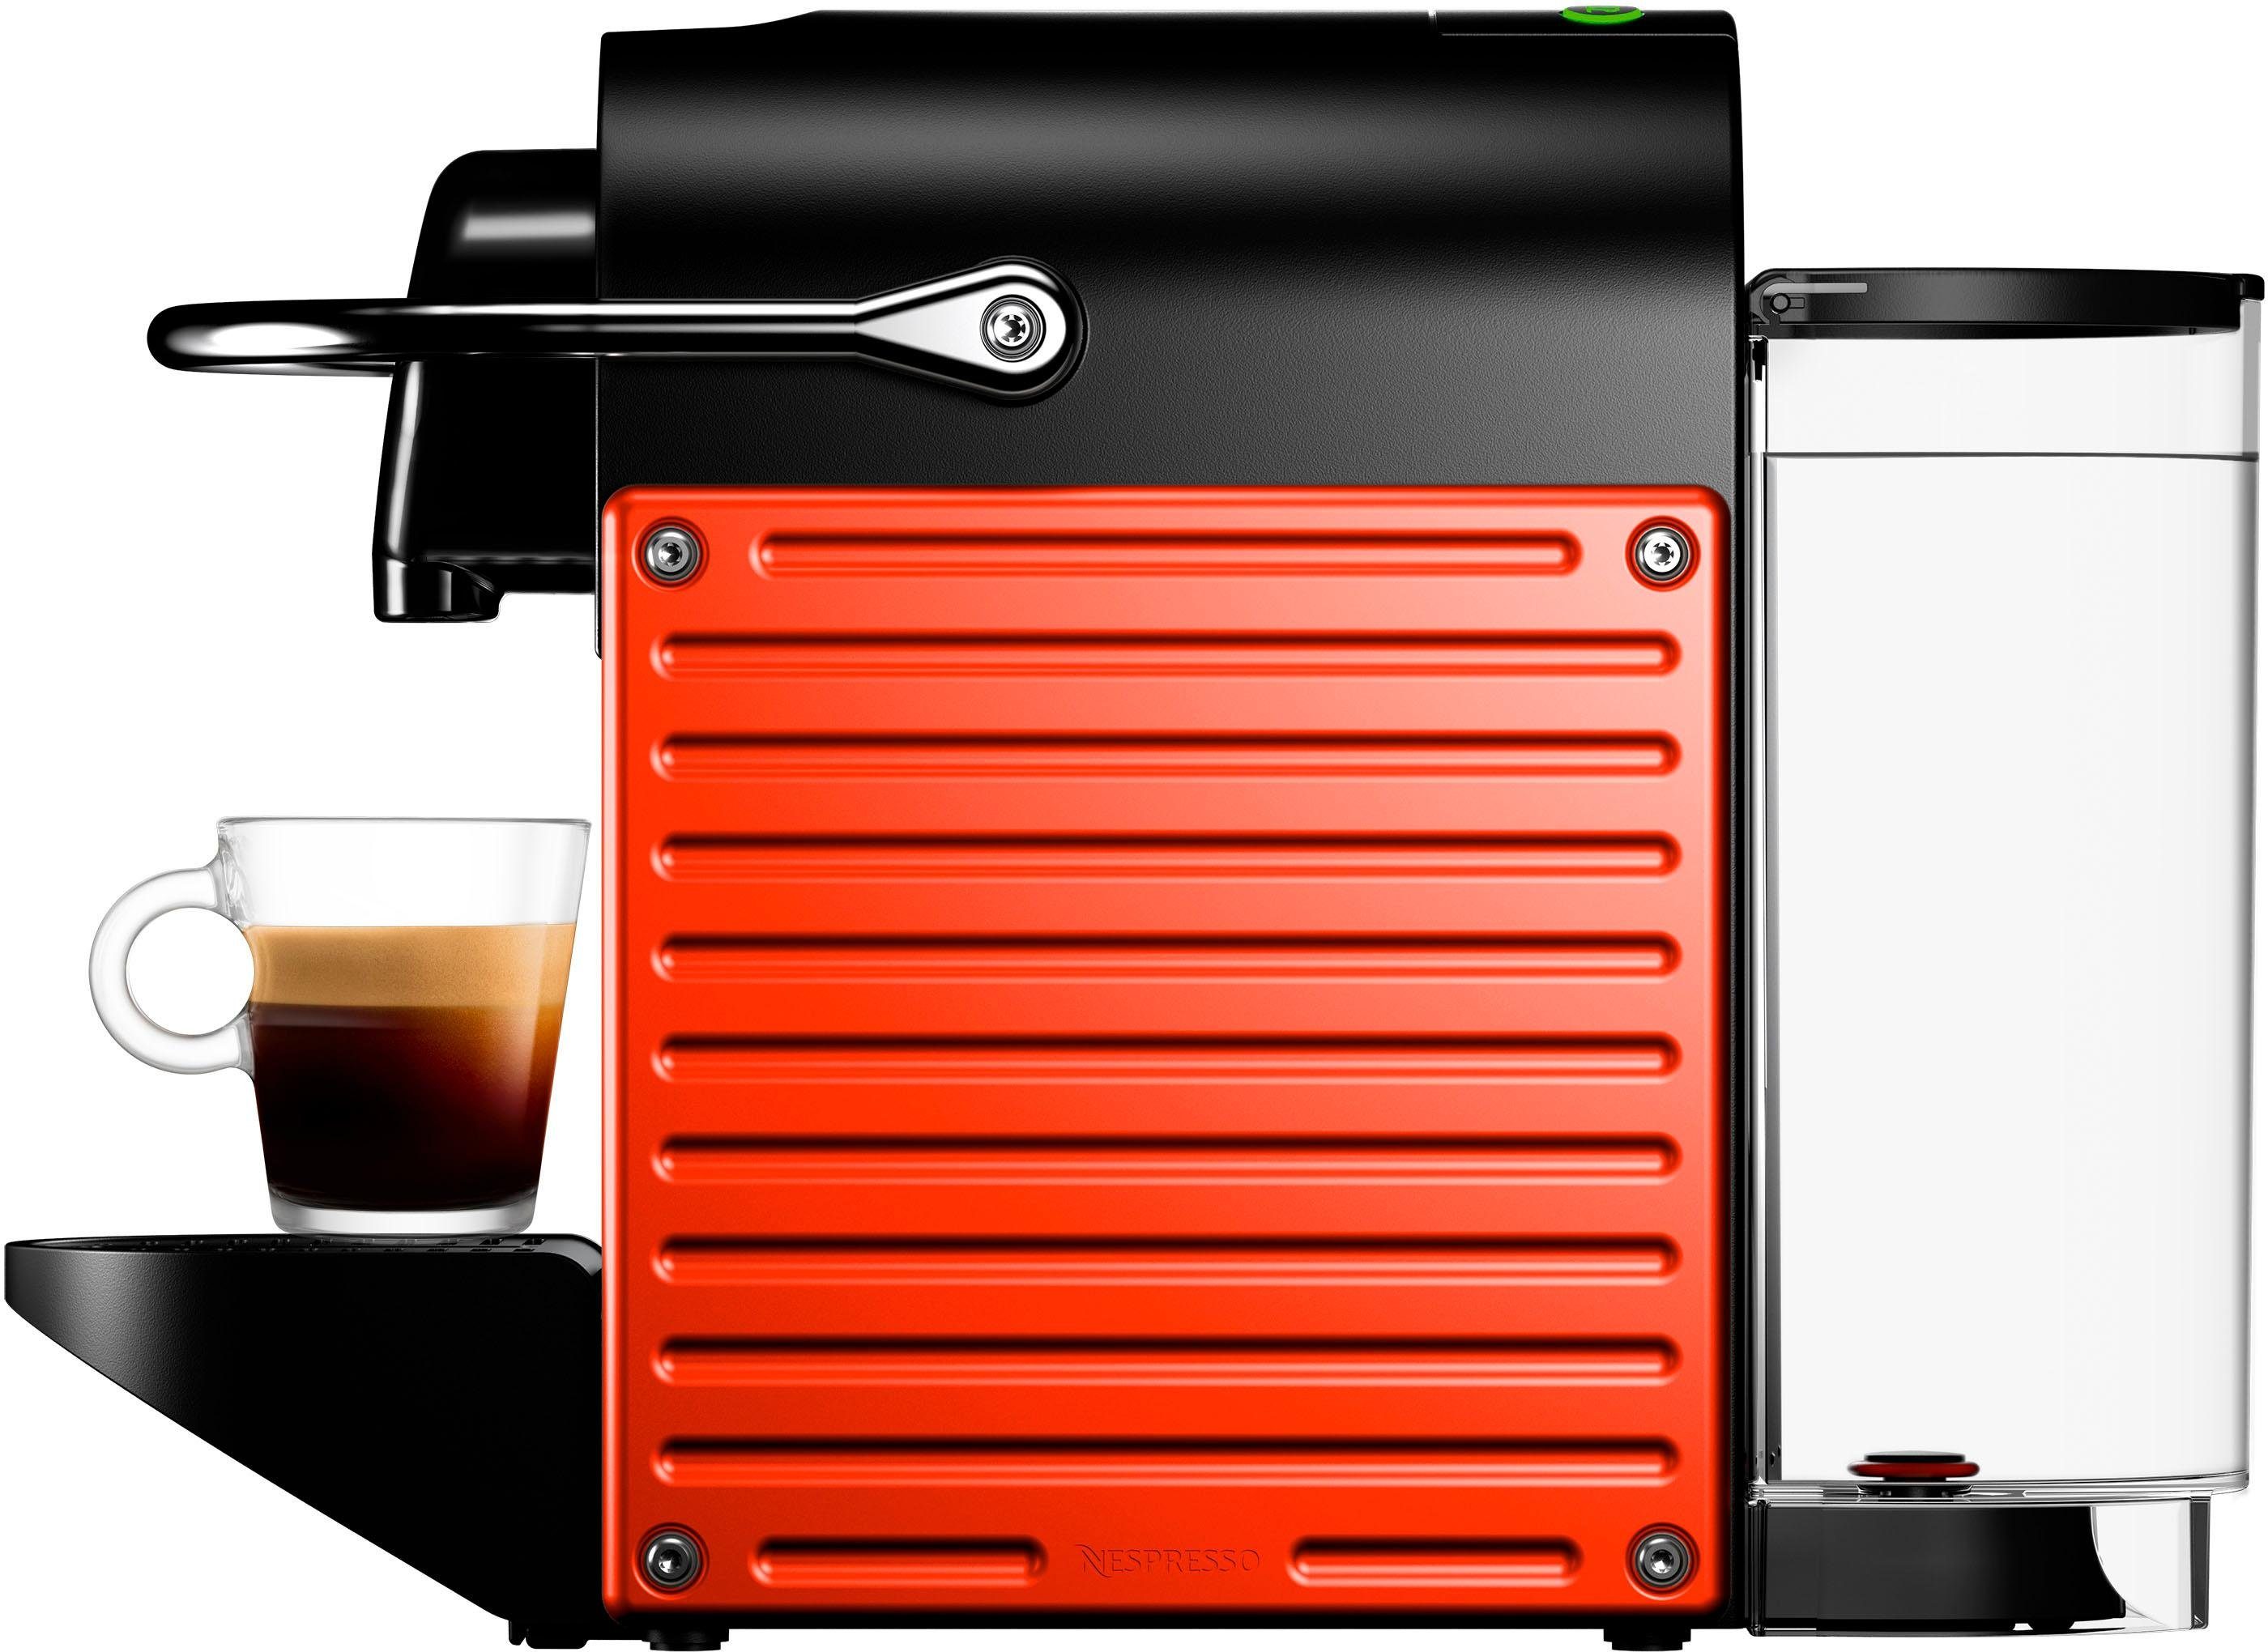 Nespresso Kapselmaschine Pixie XN3045 Krups, Red, 14 inkl. mit Kapseln Willkommenspaket von